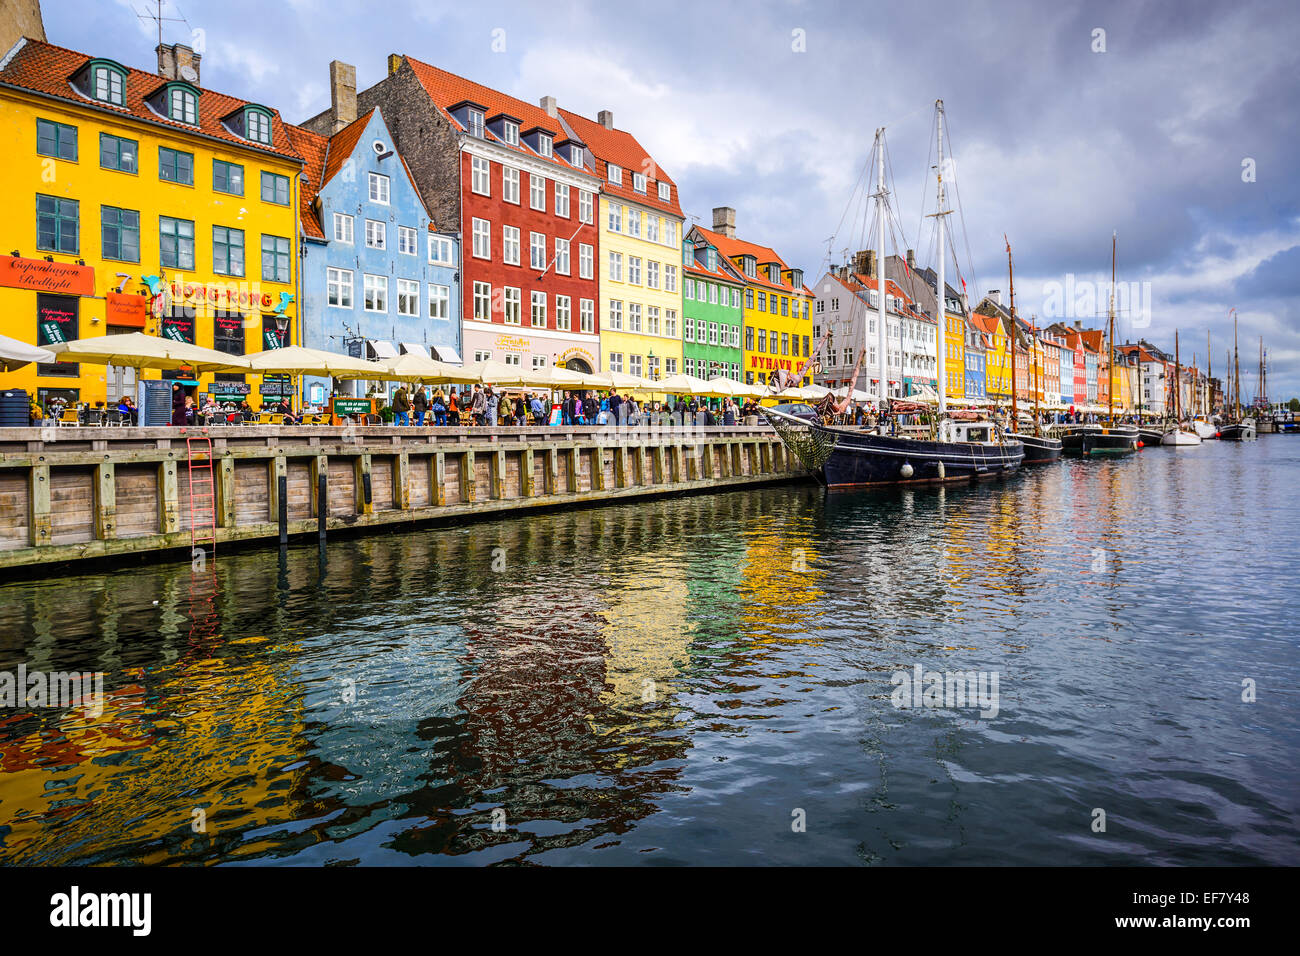 La costanera de canal de Nyhavn. El bar-rayado waterfront data del siglo XVII. Foto de stock